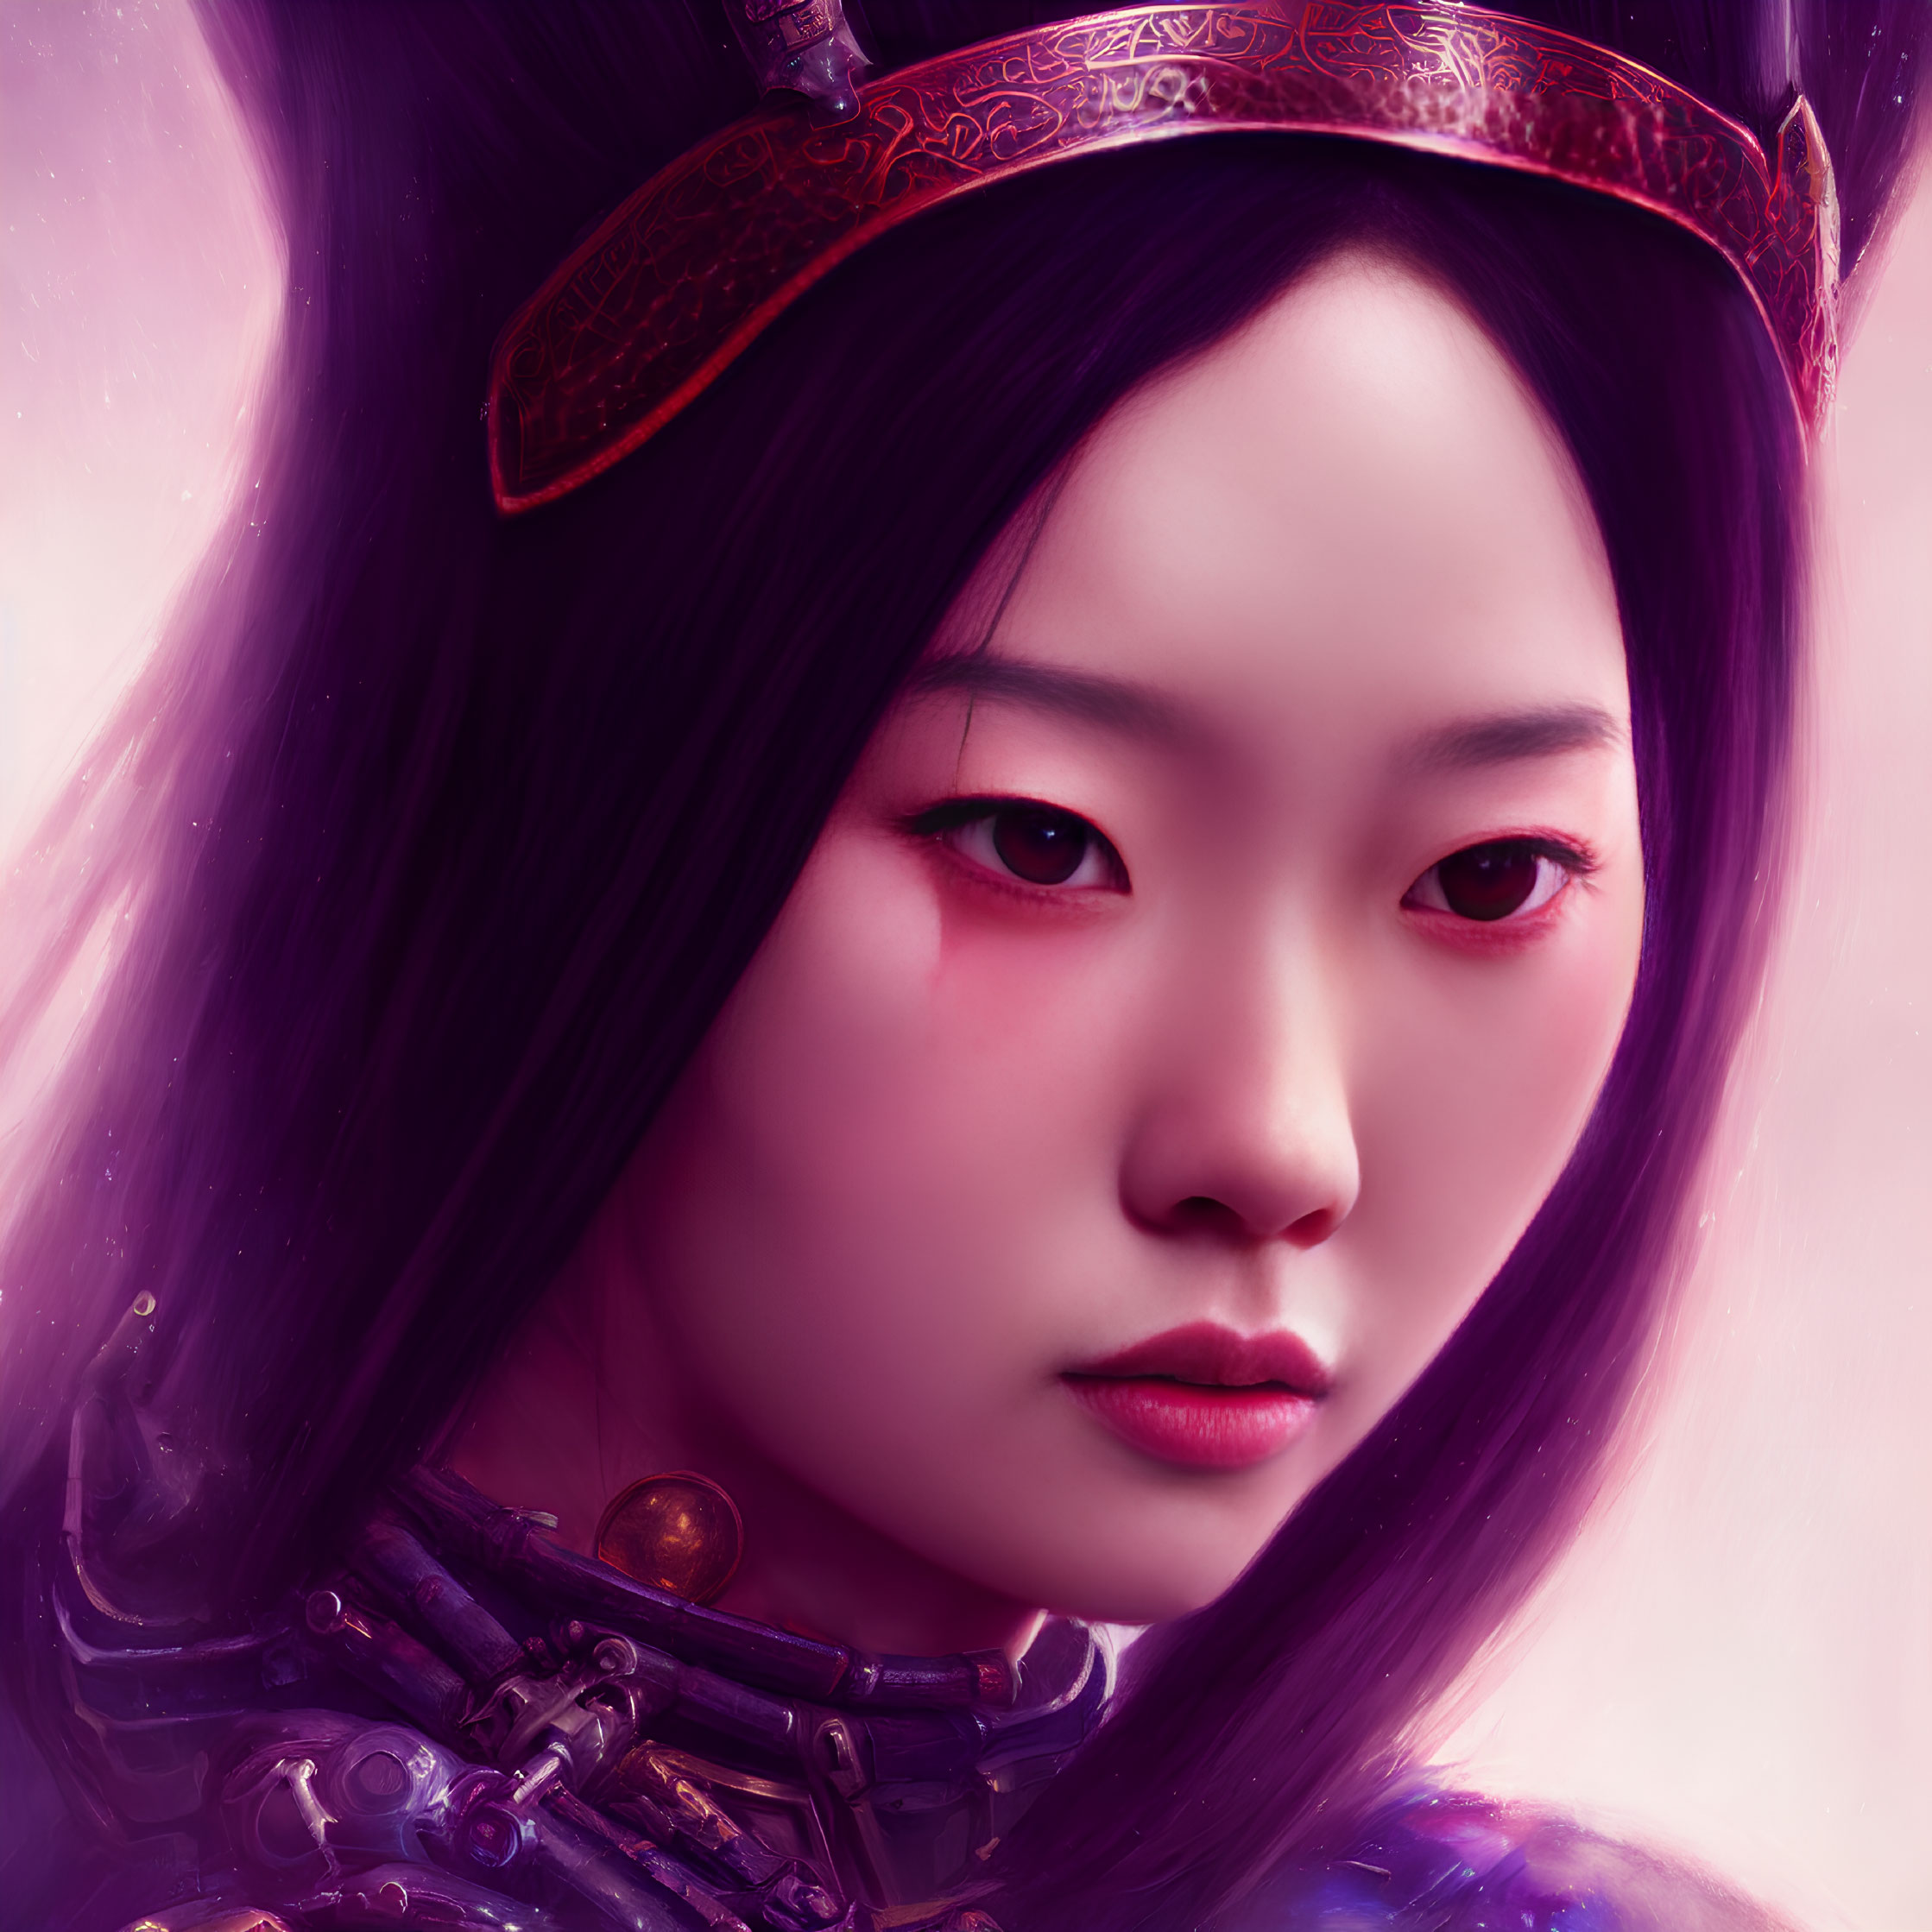 Digital artwork of woman in East Asian attire with intense gaze on purple backdrop